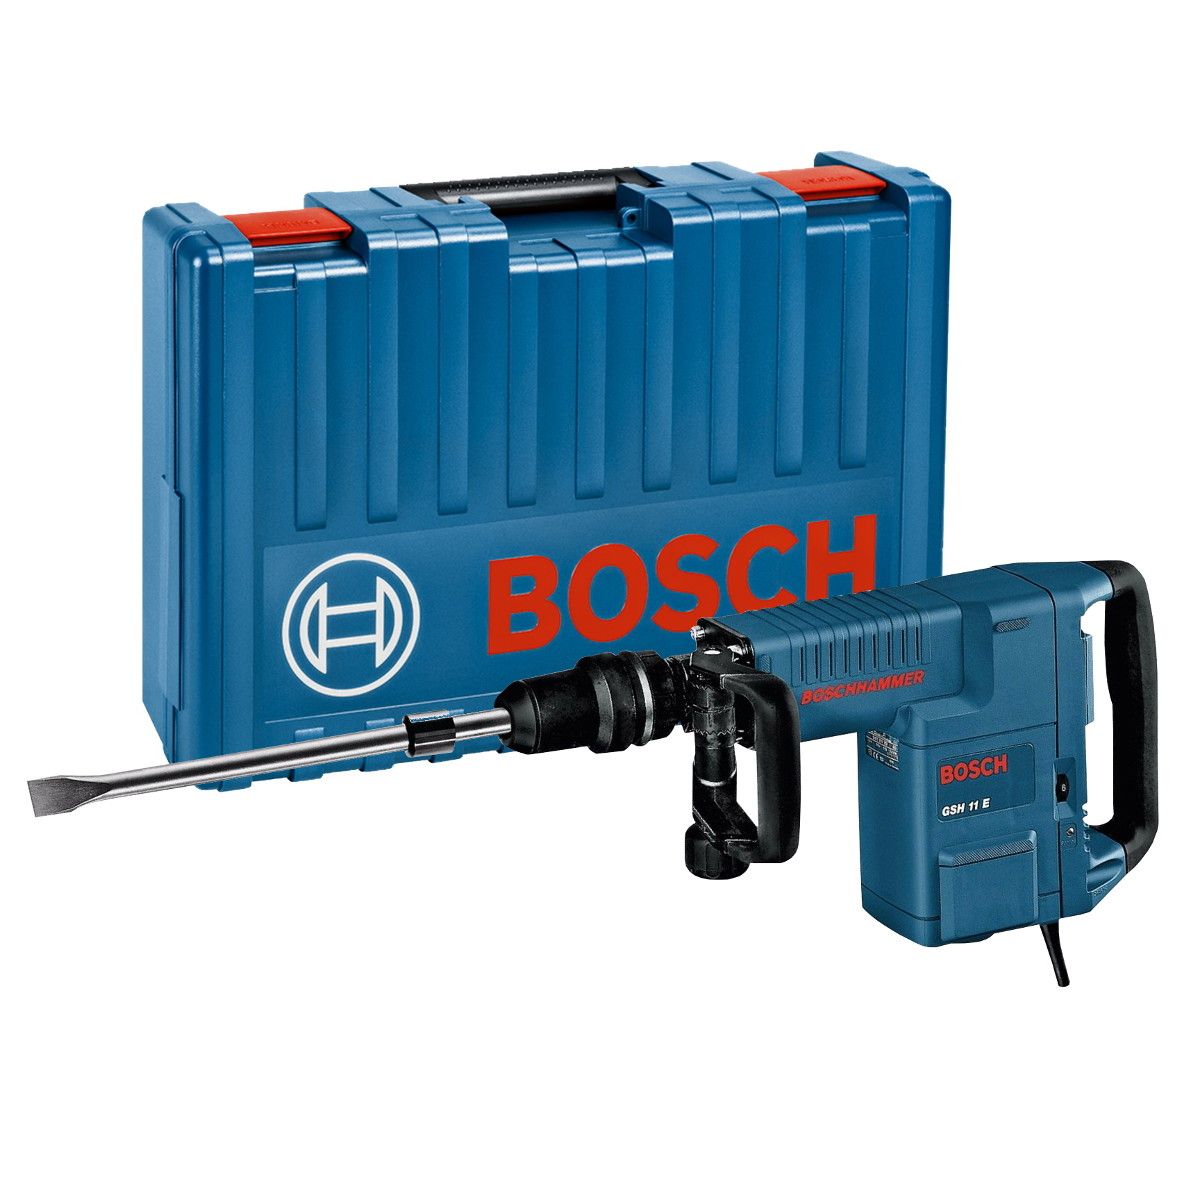 Bosch GSH 11 E SDS max breekhamer 16,8J in koffer